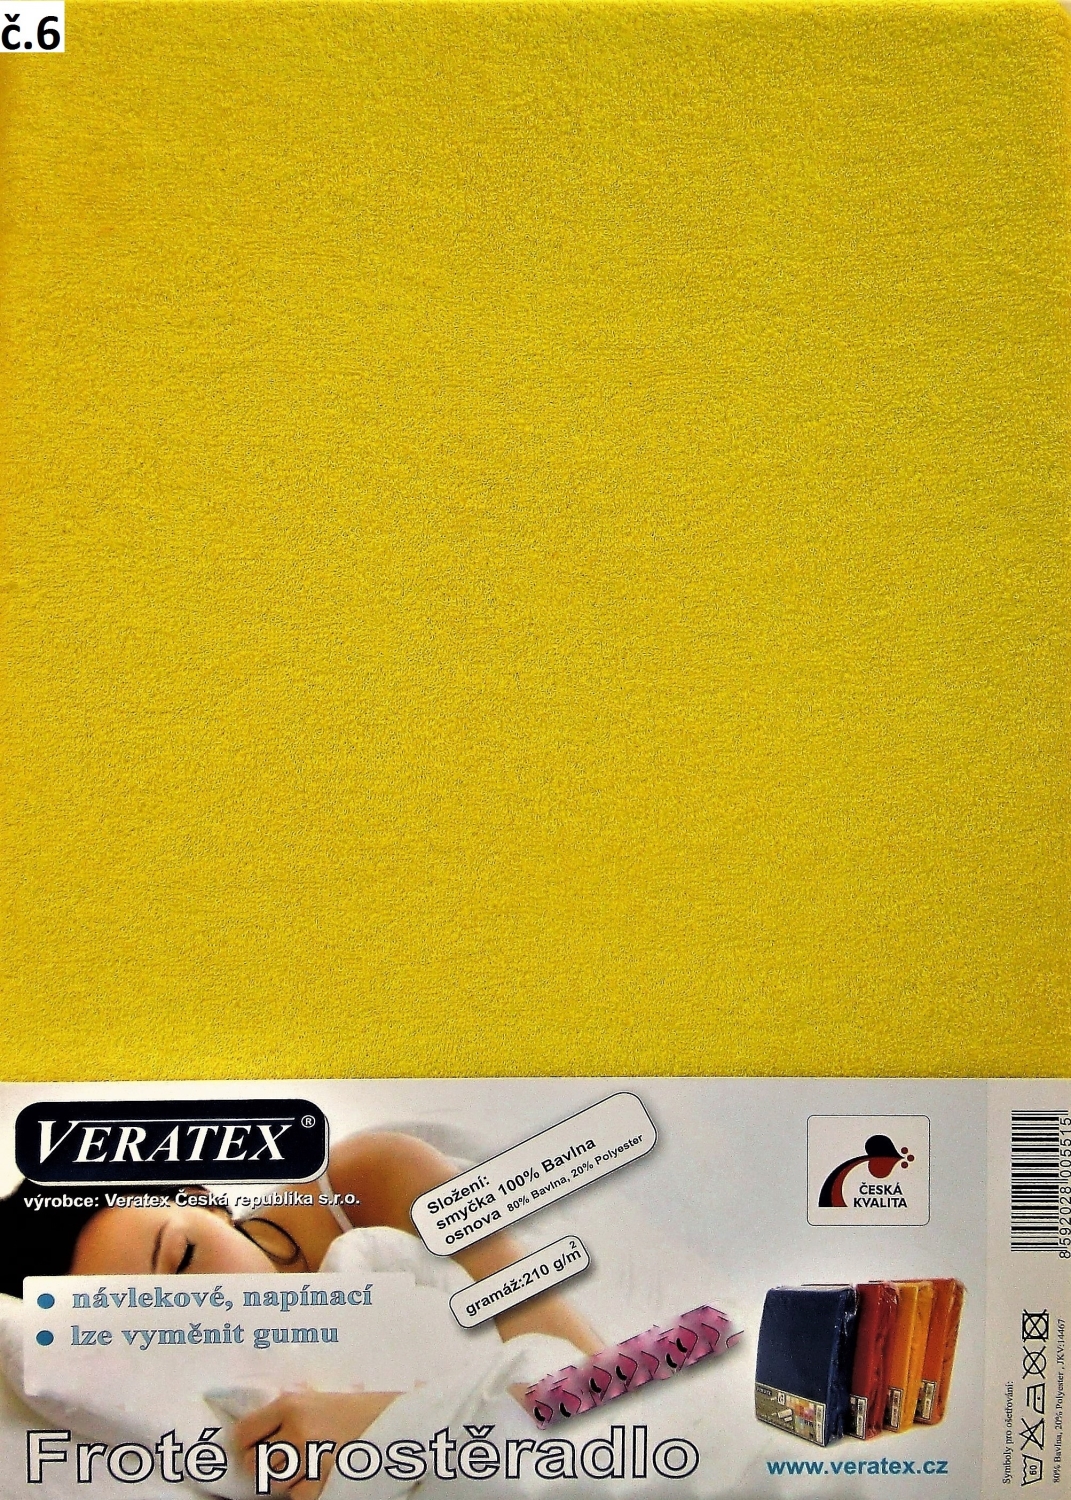 Veratex Froté prostěradlo 130x200/16 cm (č. 6-stř.žlutá)